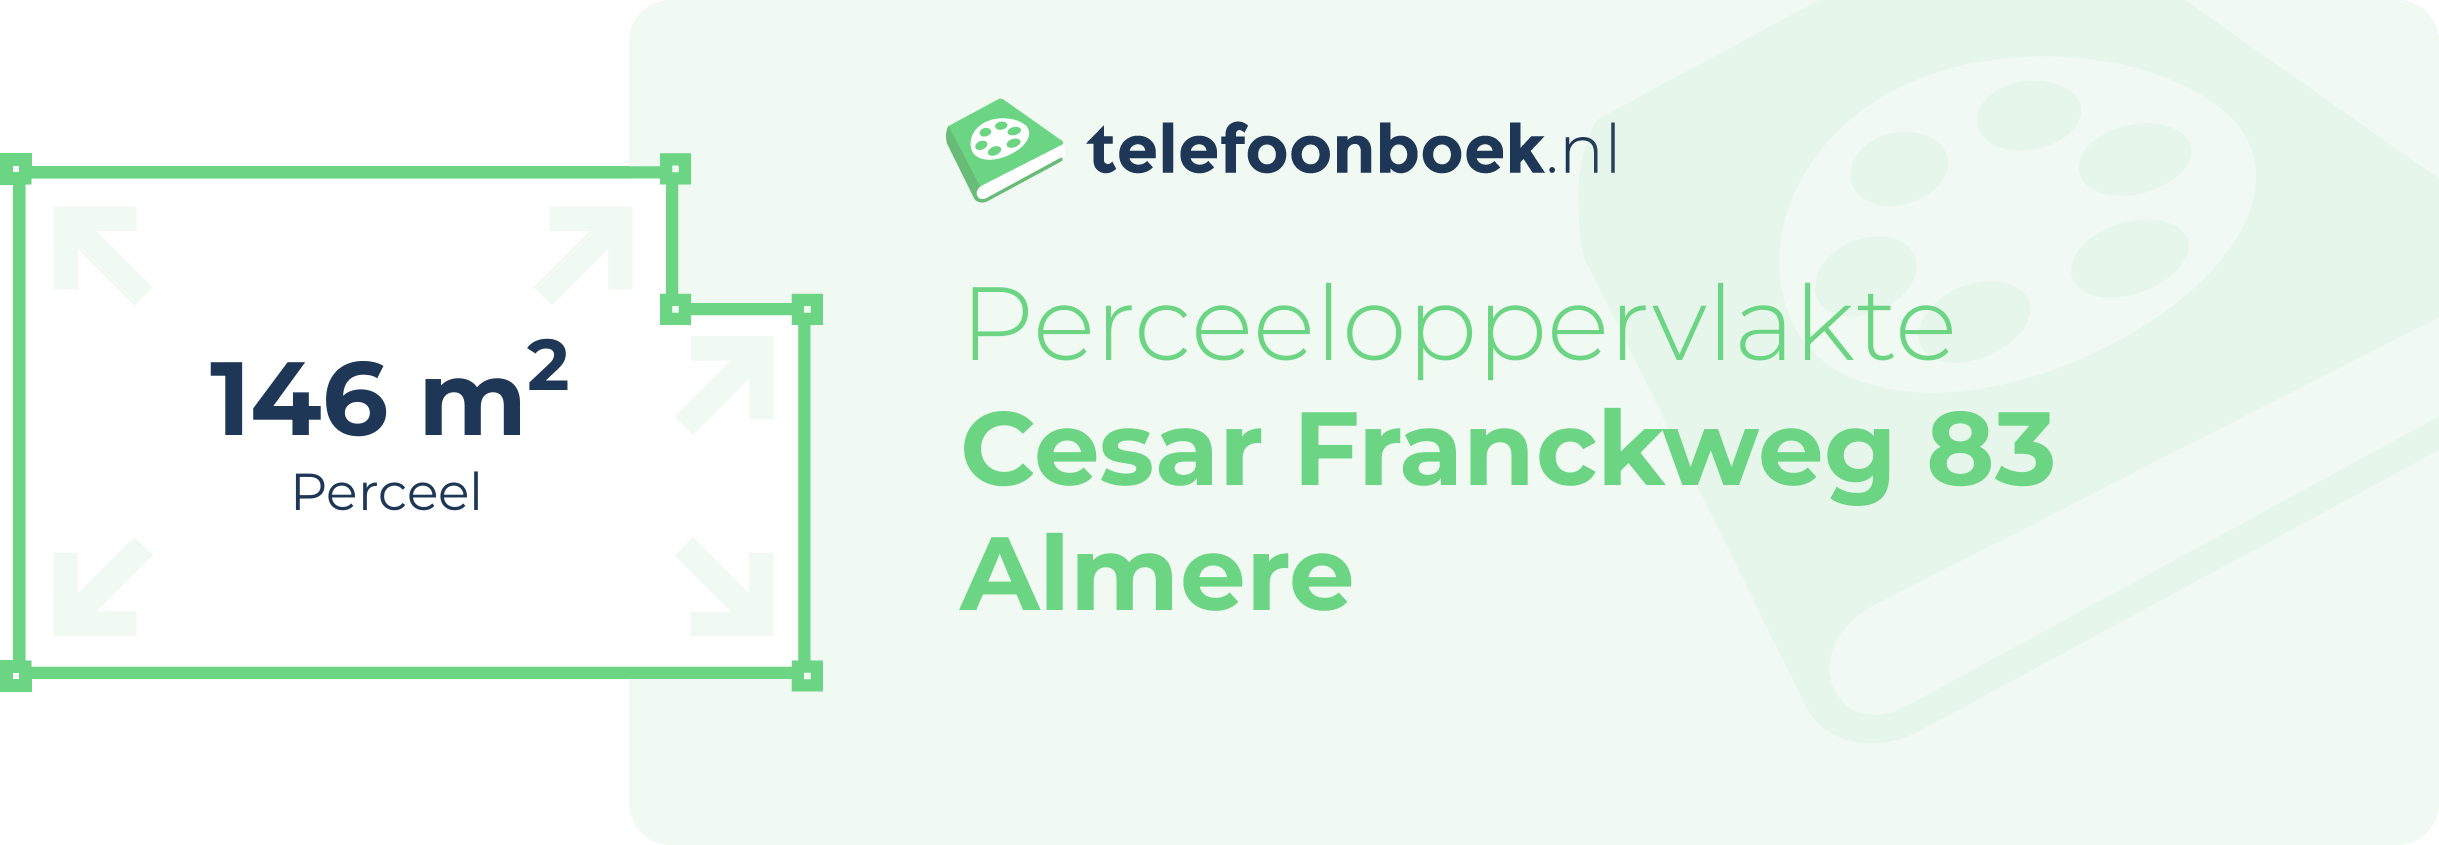 Perceeloppervlakte Cesar Franckweg 83 Almere